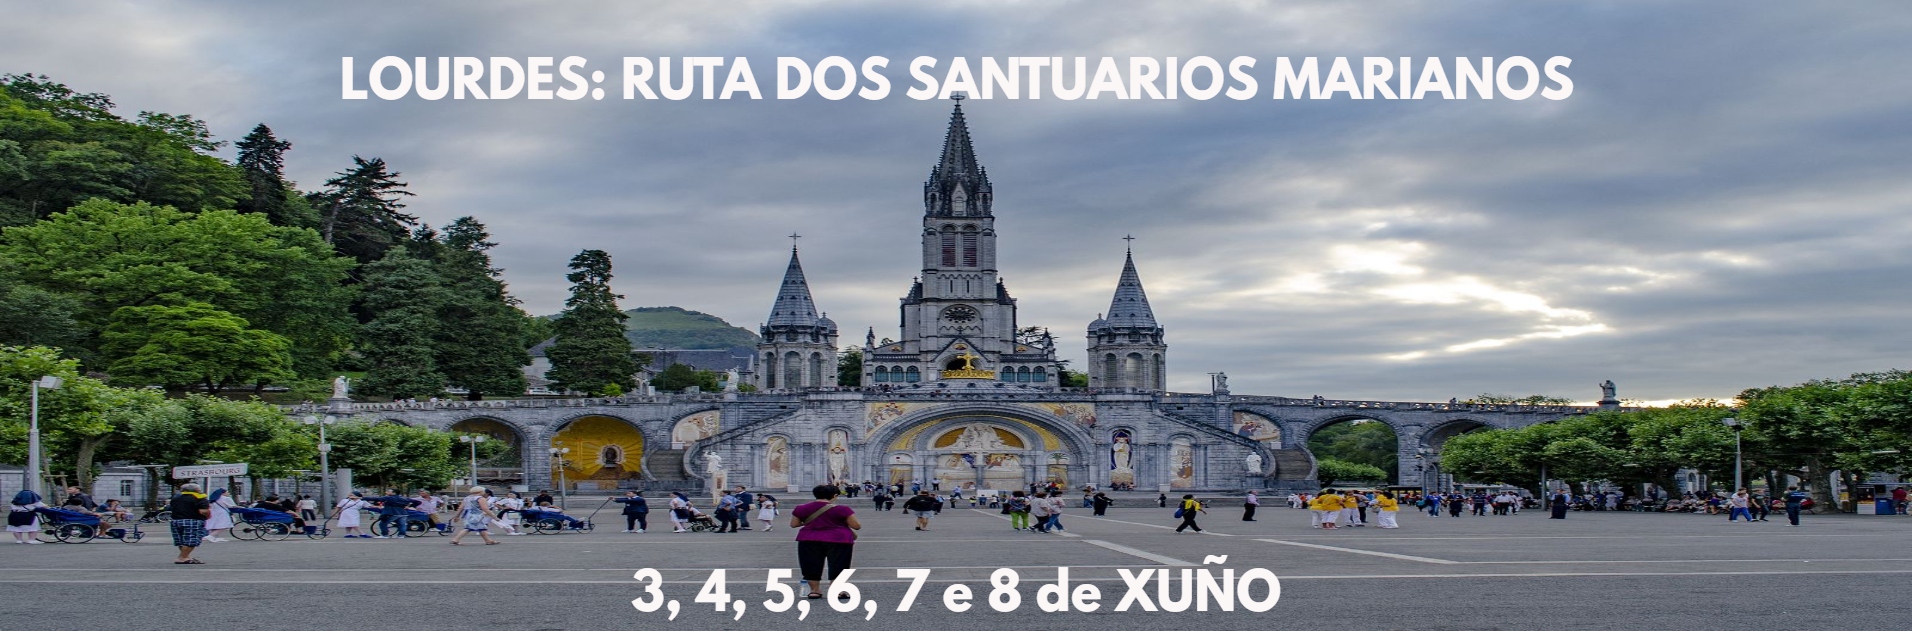 Lourdes: Ruta dos Santuarios Marianos